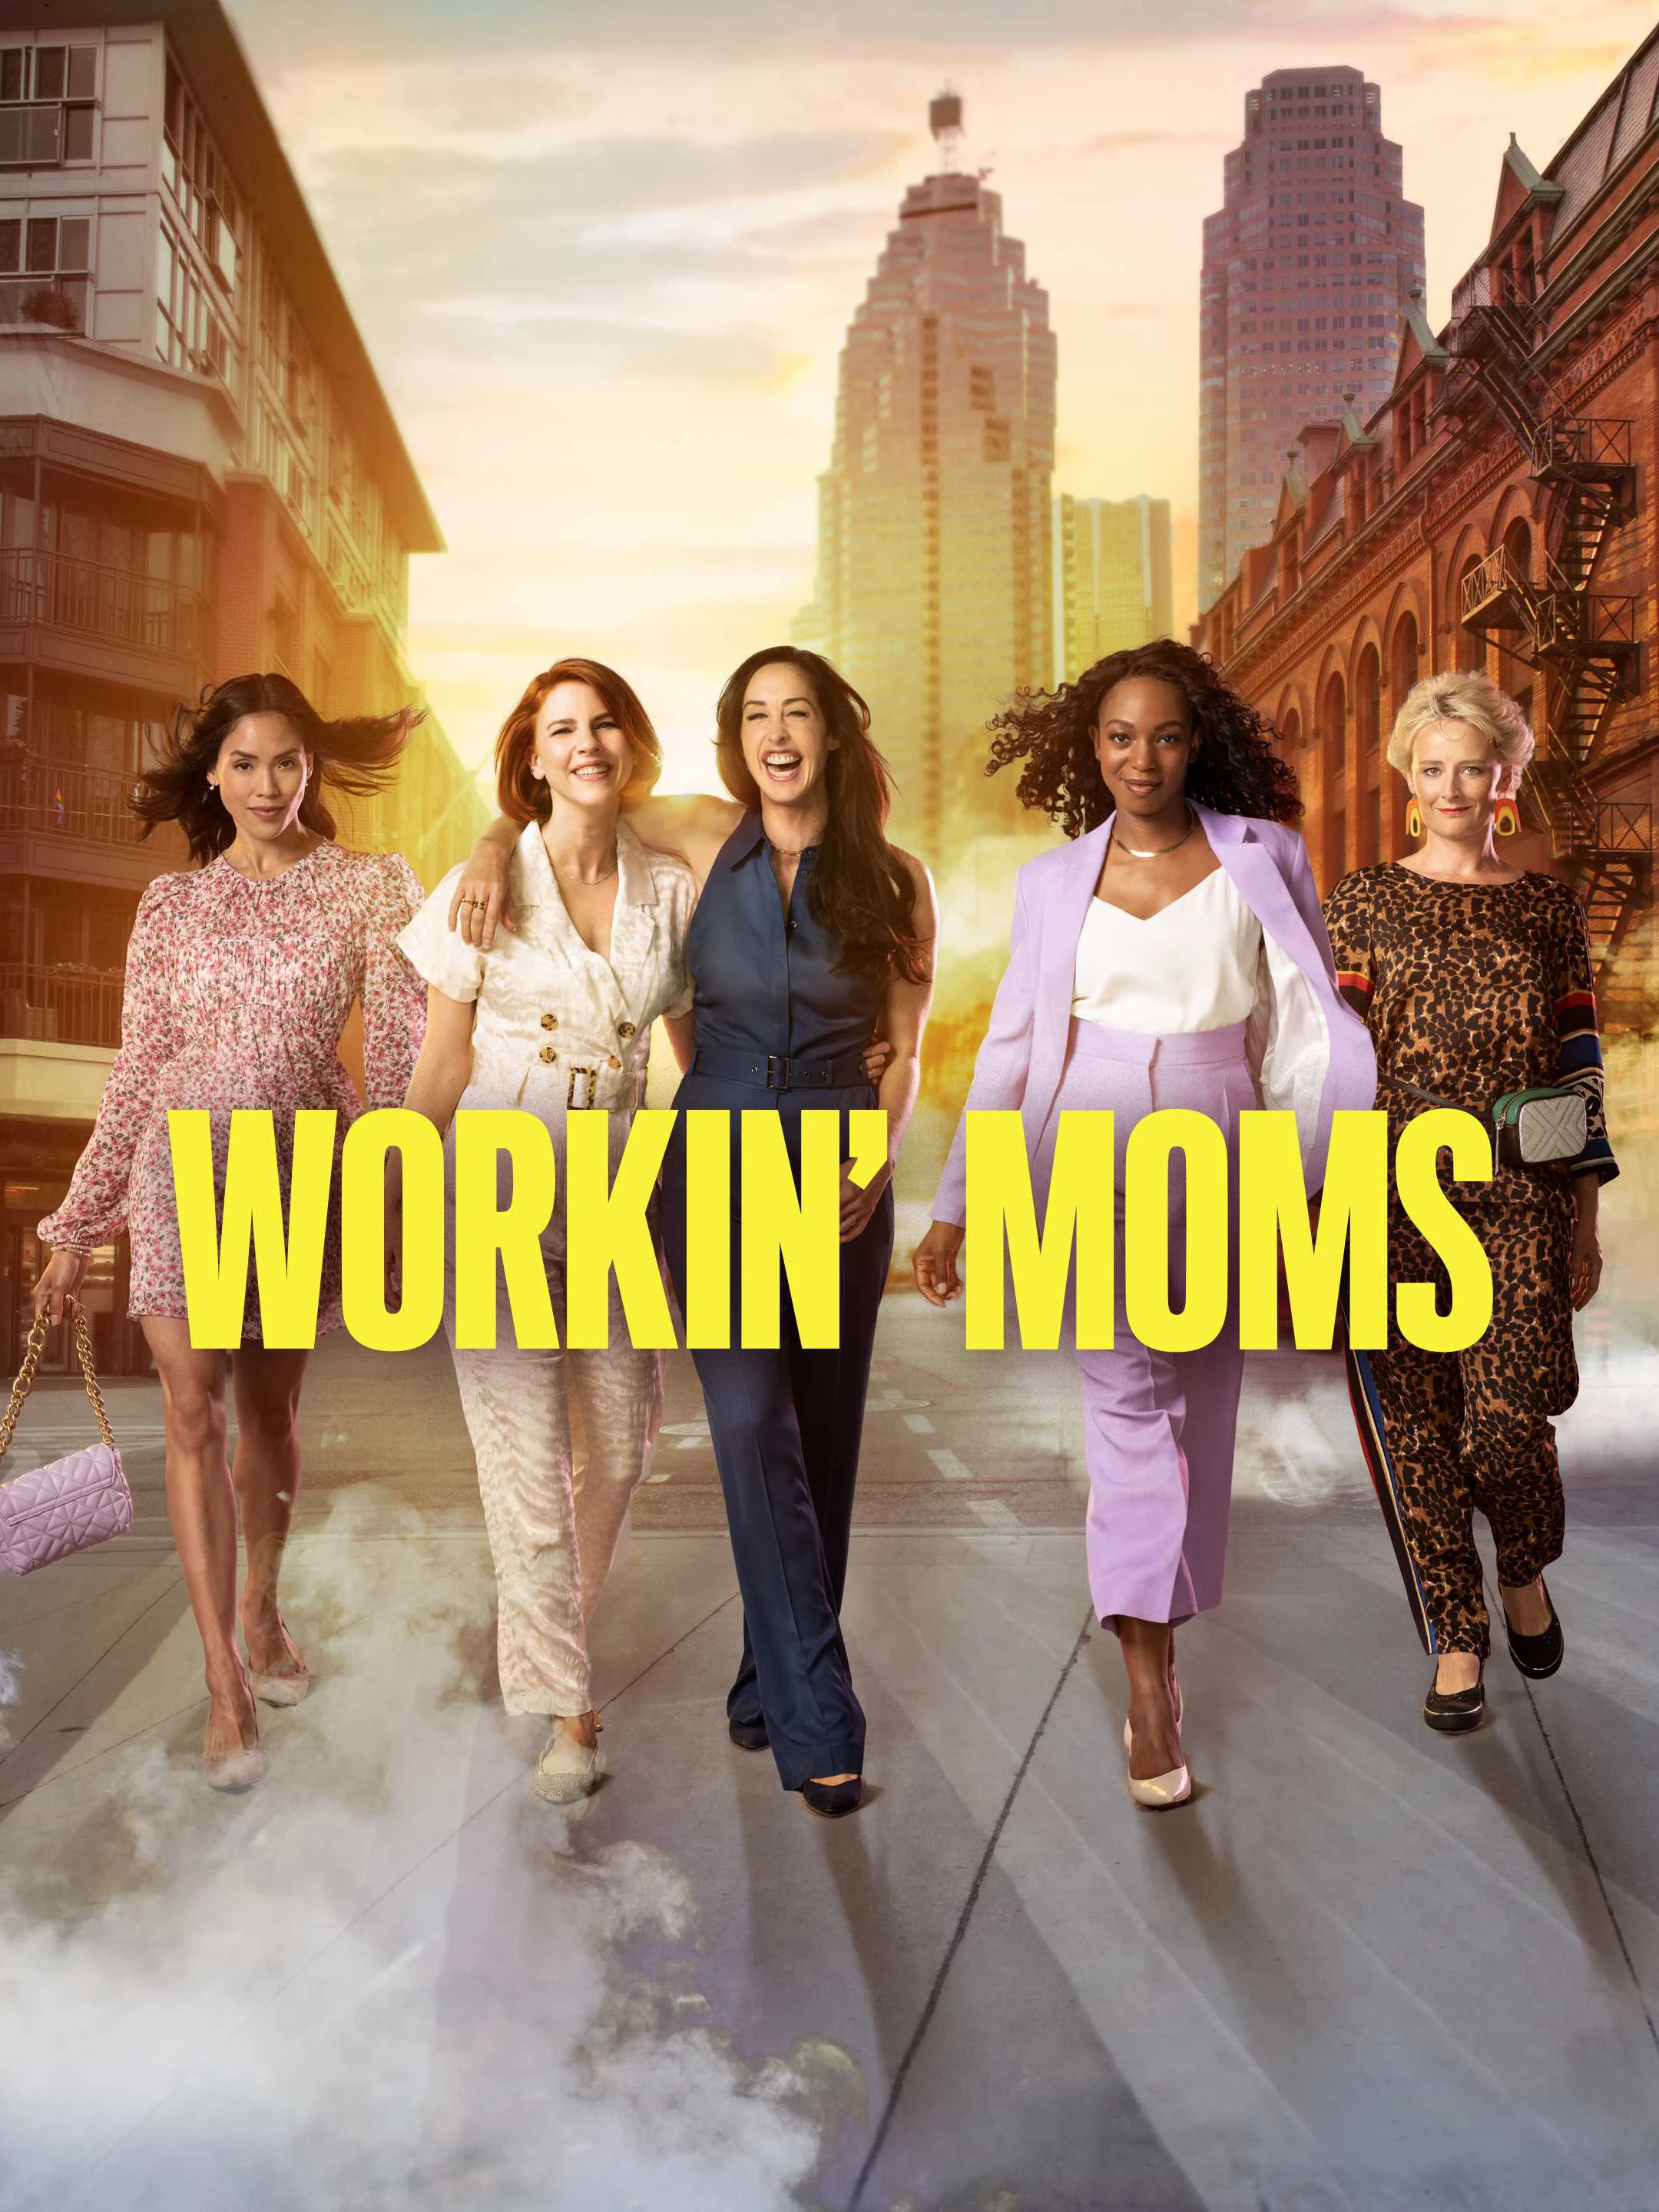 Những bà mẹ siêu nhân (Phần 2) | Workin' Moms (Season 2) (2017)